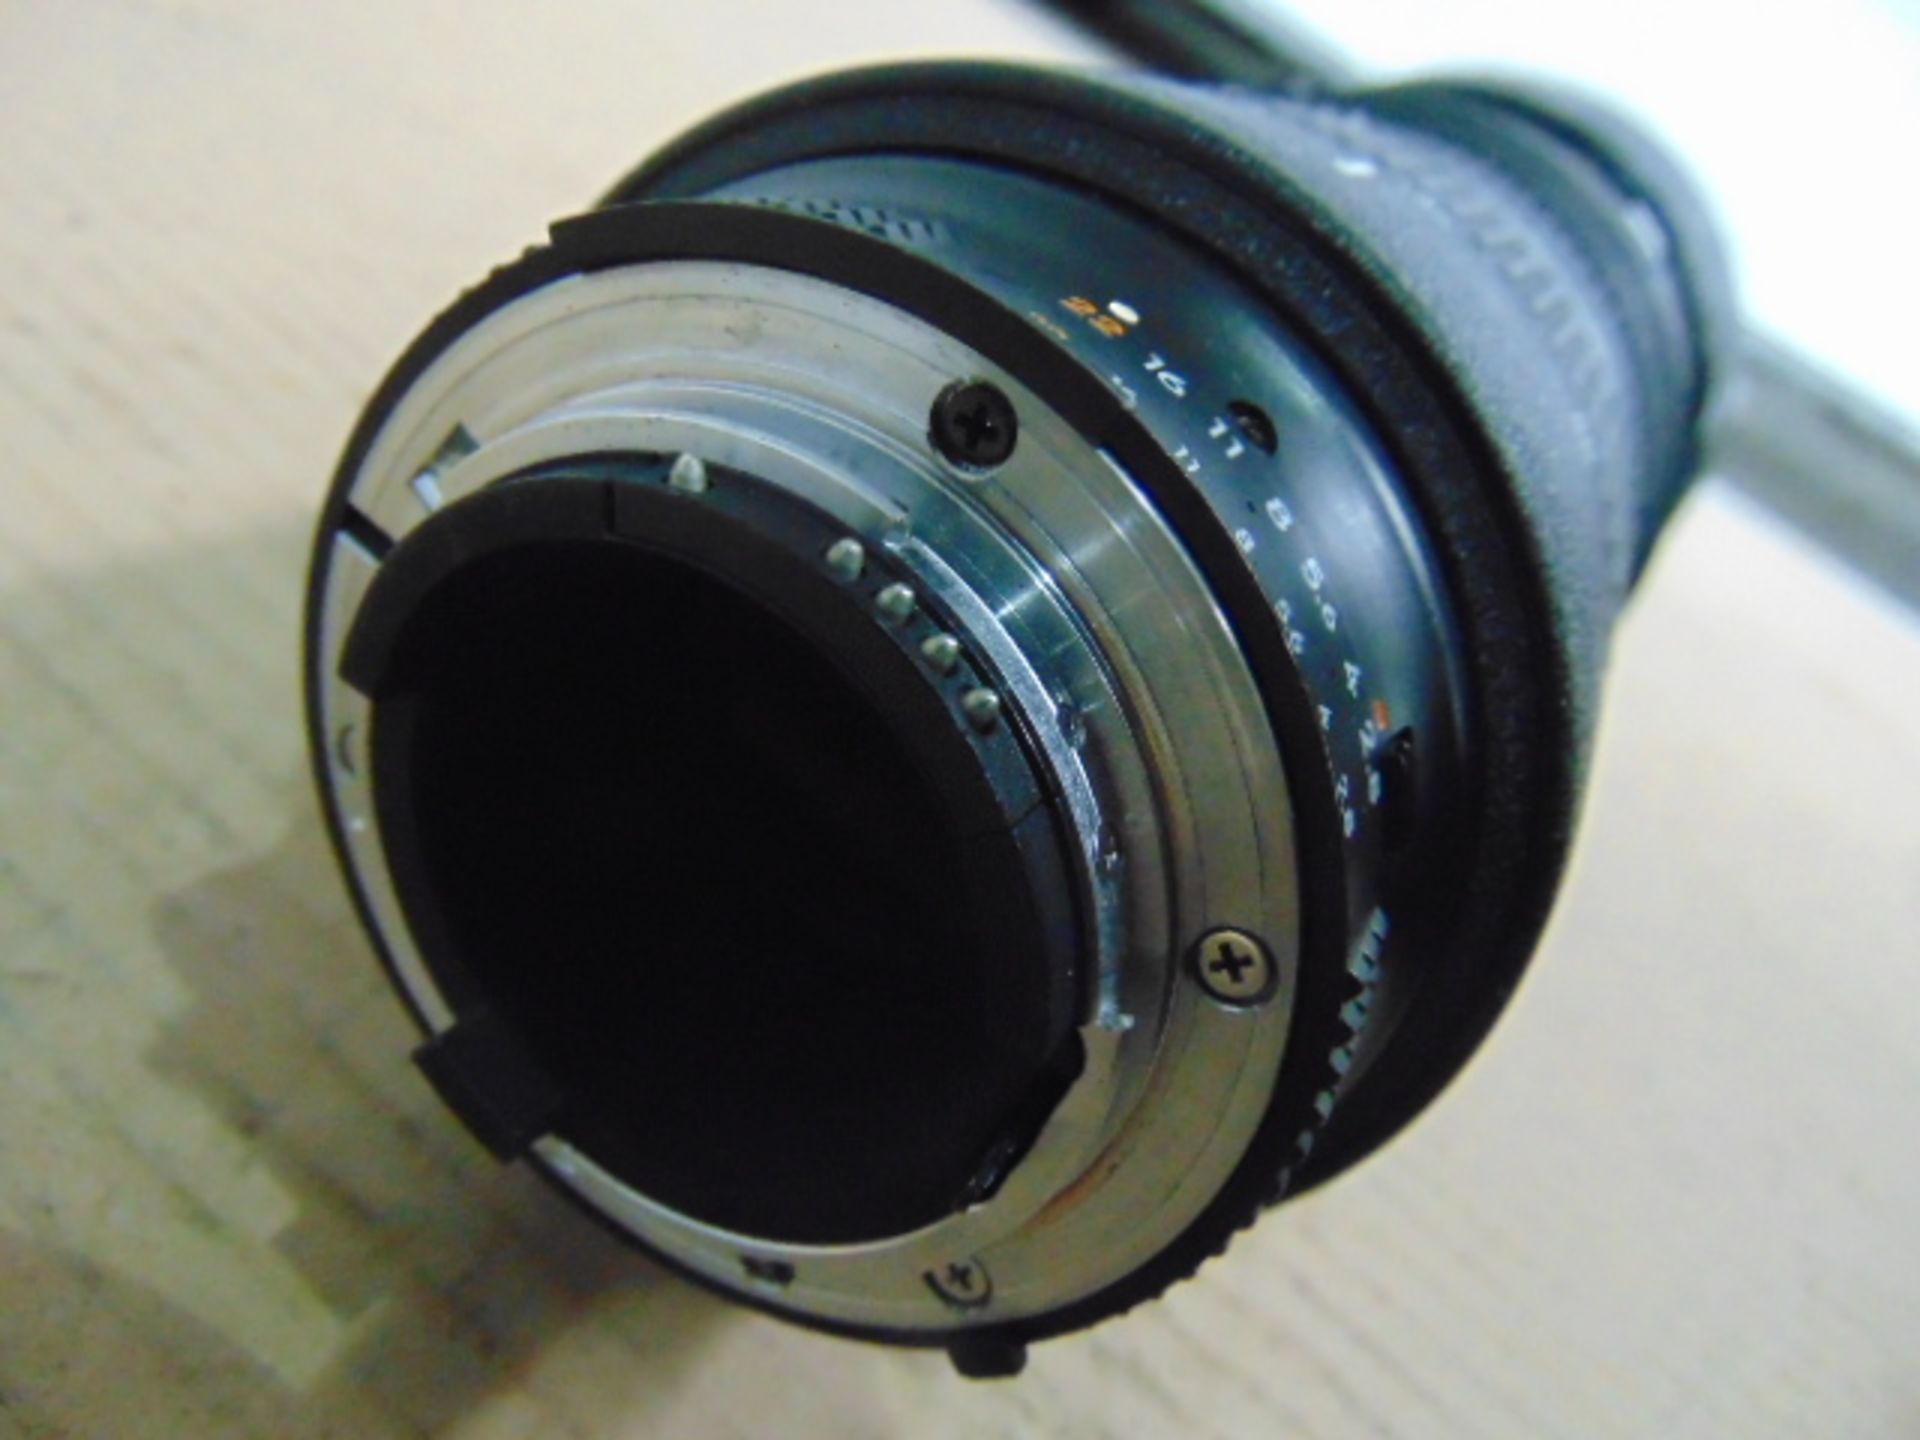 Nikon ED AF Nikkor 80-200mm 1:2.8 D Lense with Leather Carry Case - Image 3 of 11